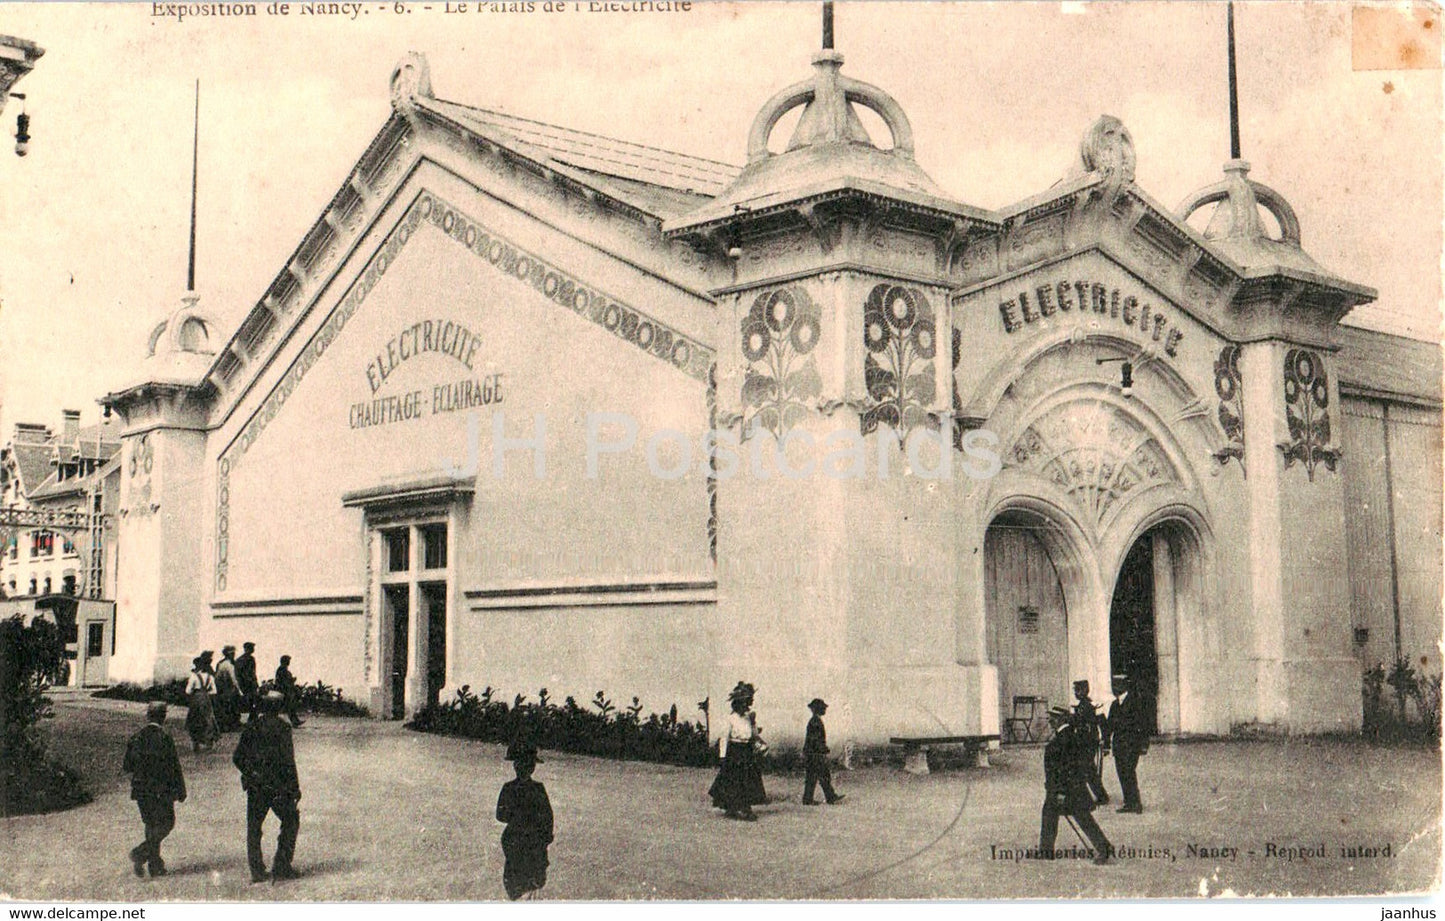 Exposition de Nancy - Le Palais de l'Electricite - 6 - old postcard - 1909 - France - used - JH Postcards